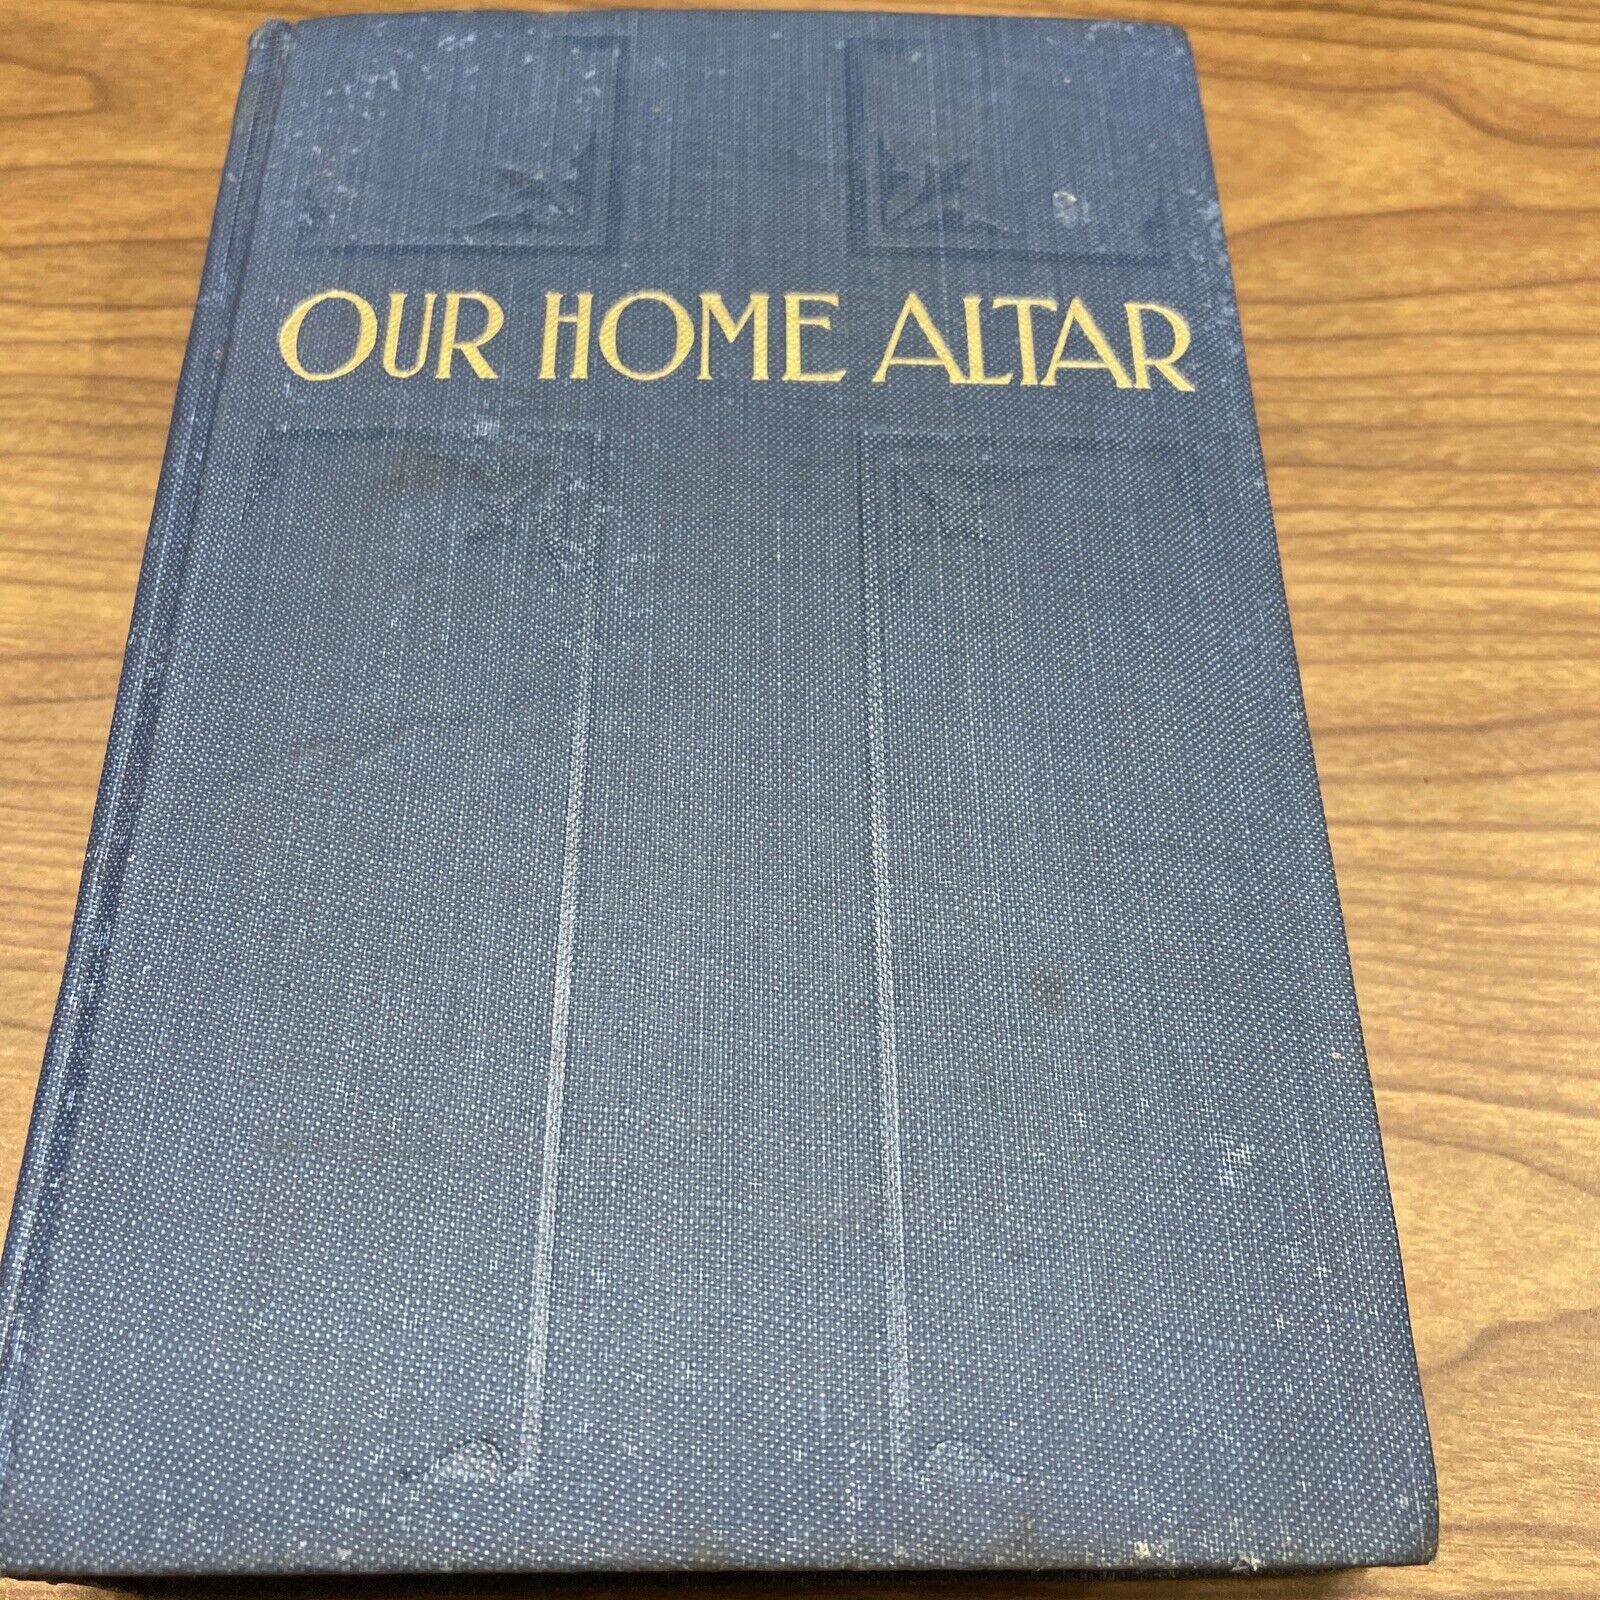 1914 Our Home Altar